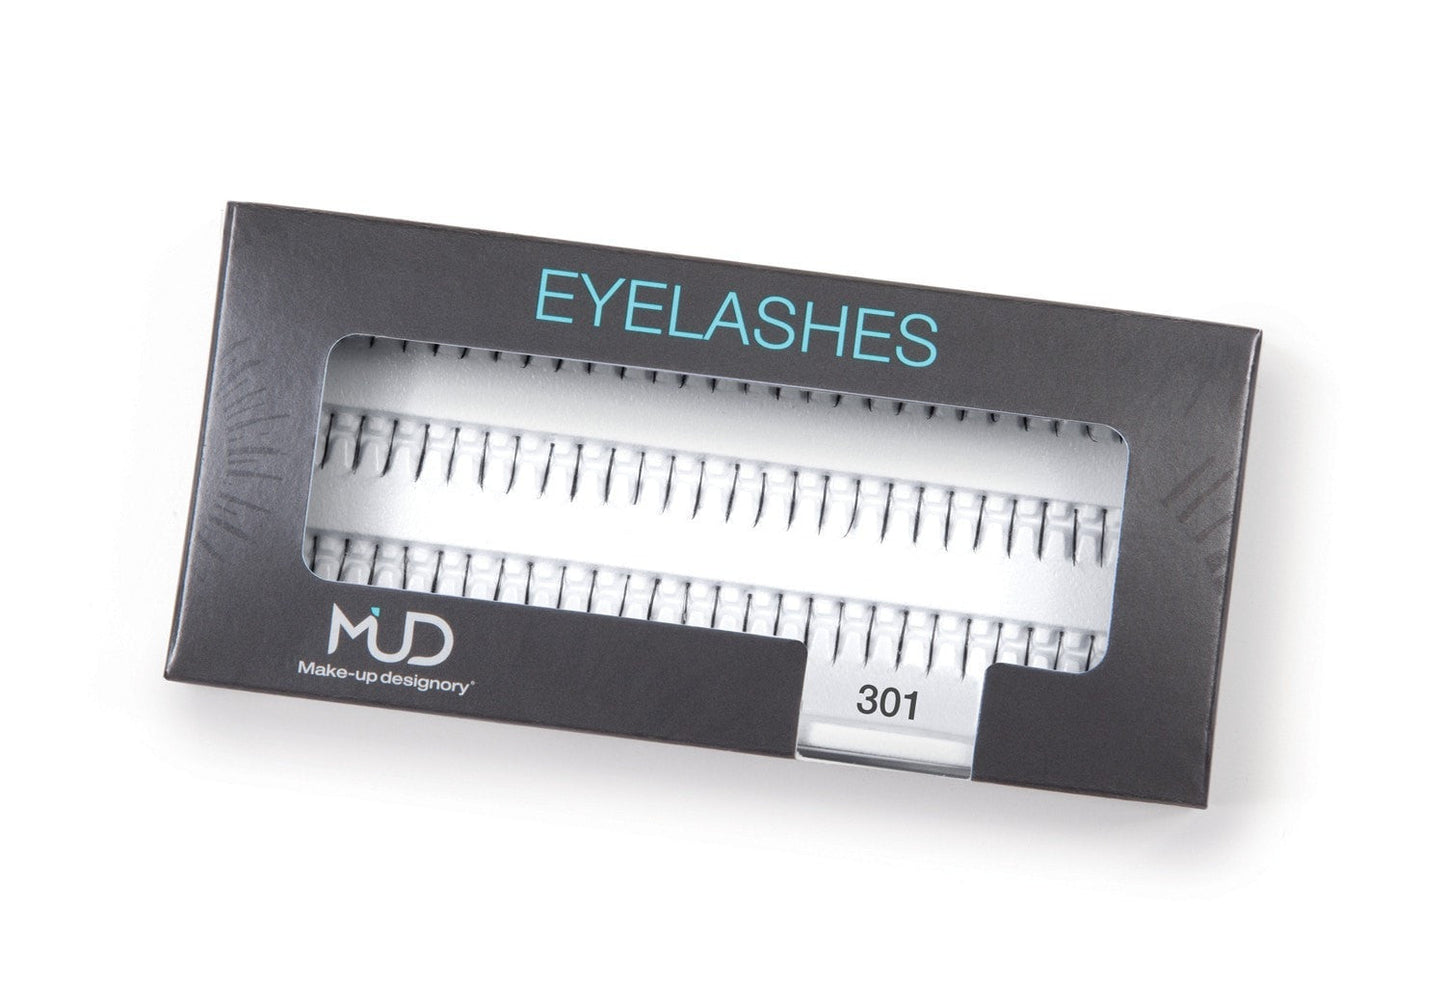 Make-up Designory Eyelashes 301 Eyelashes